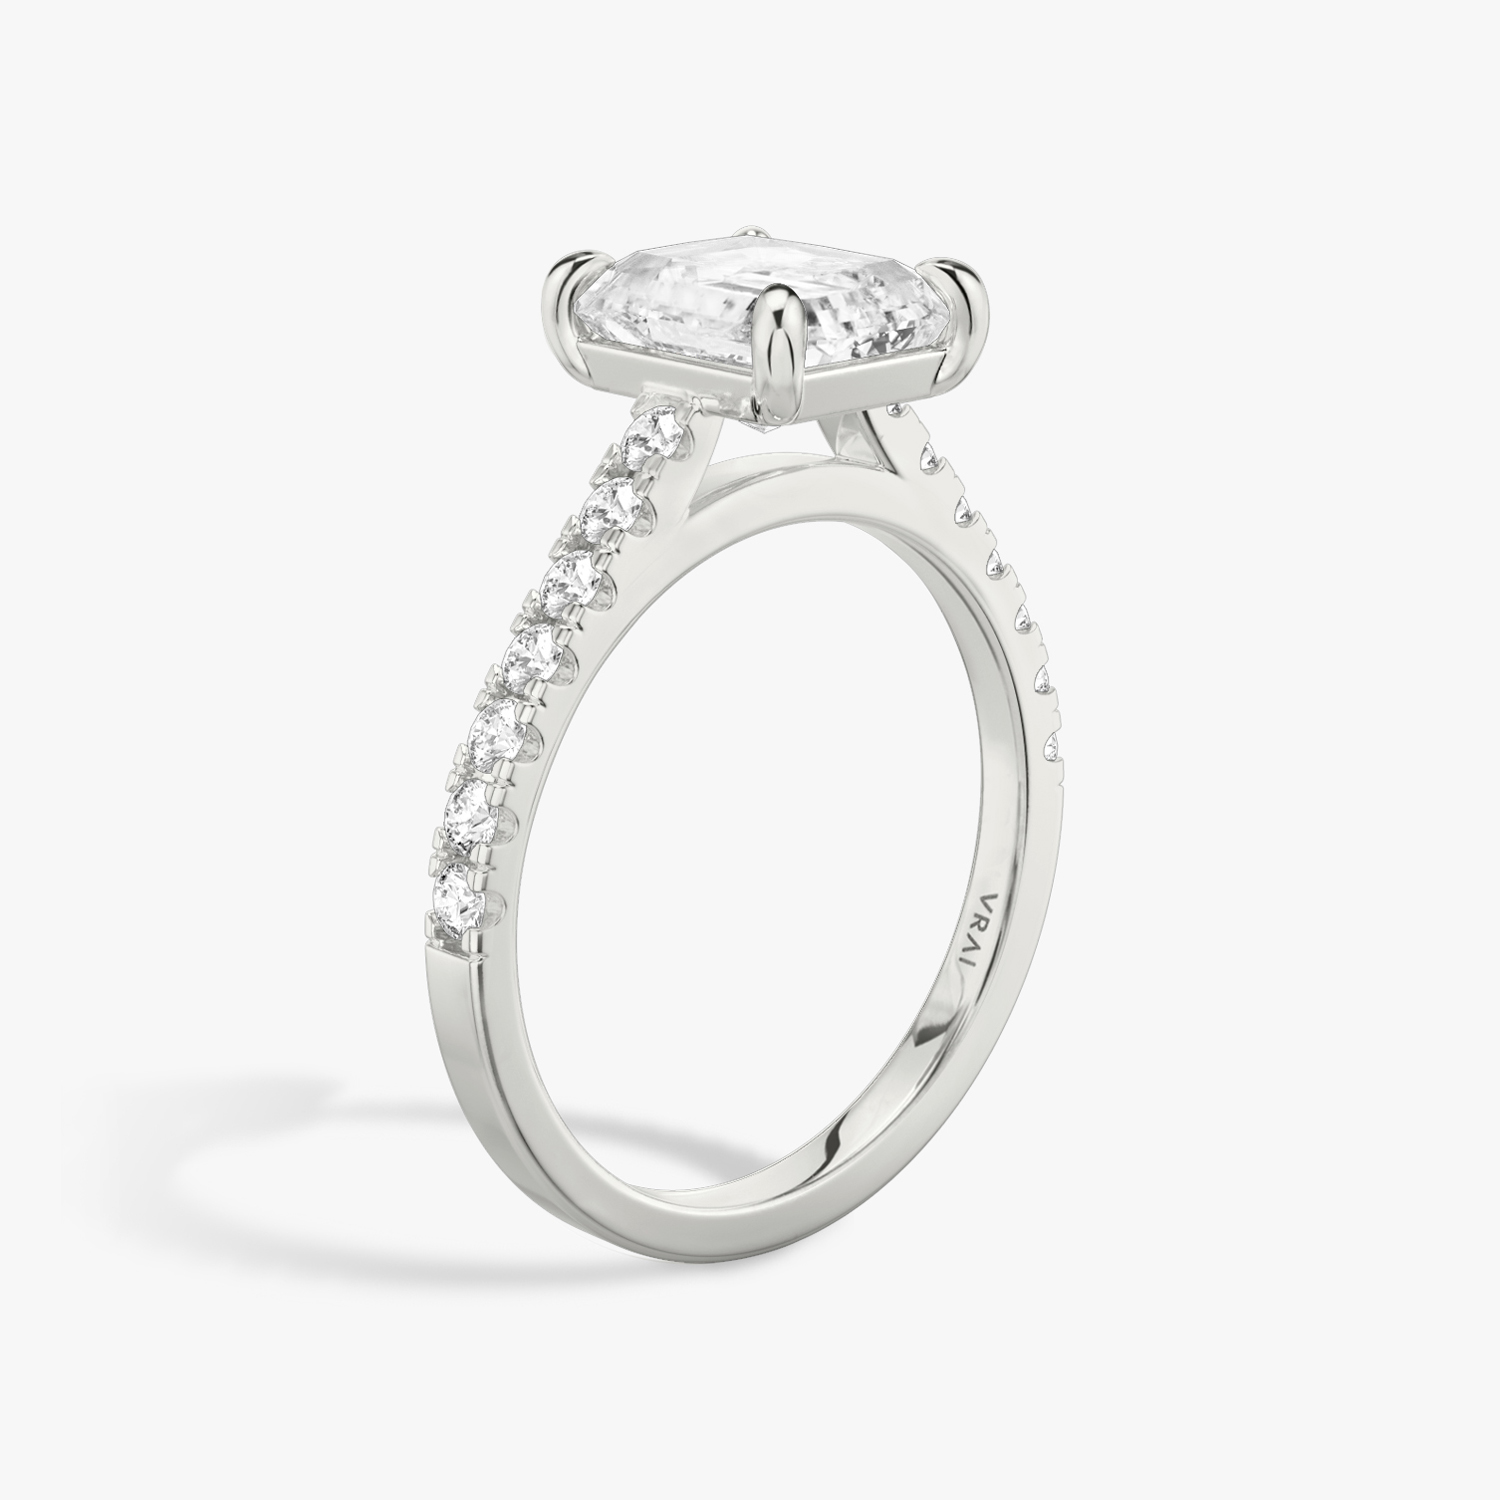 Buy Flower Beauty Diamond Ring Online - Zaveribros